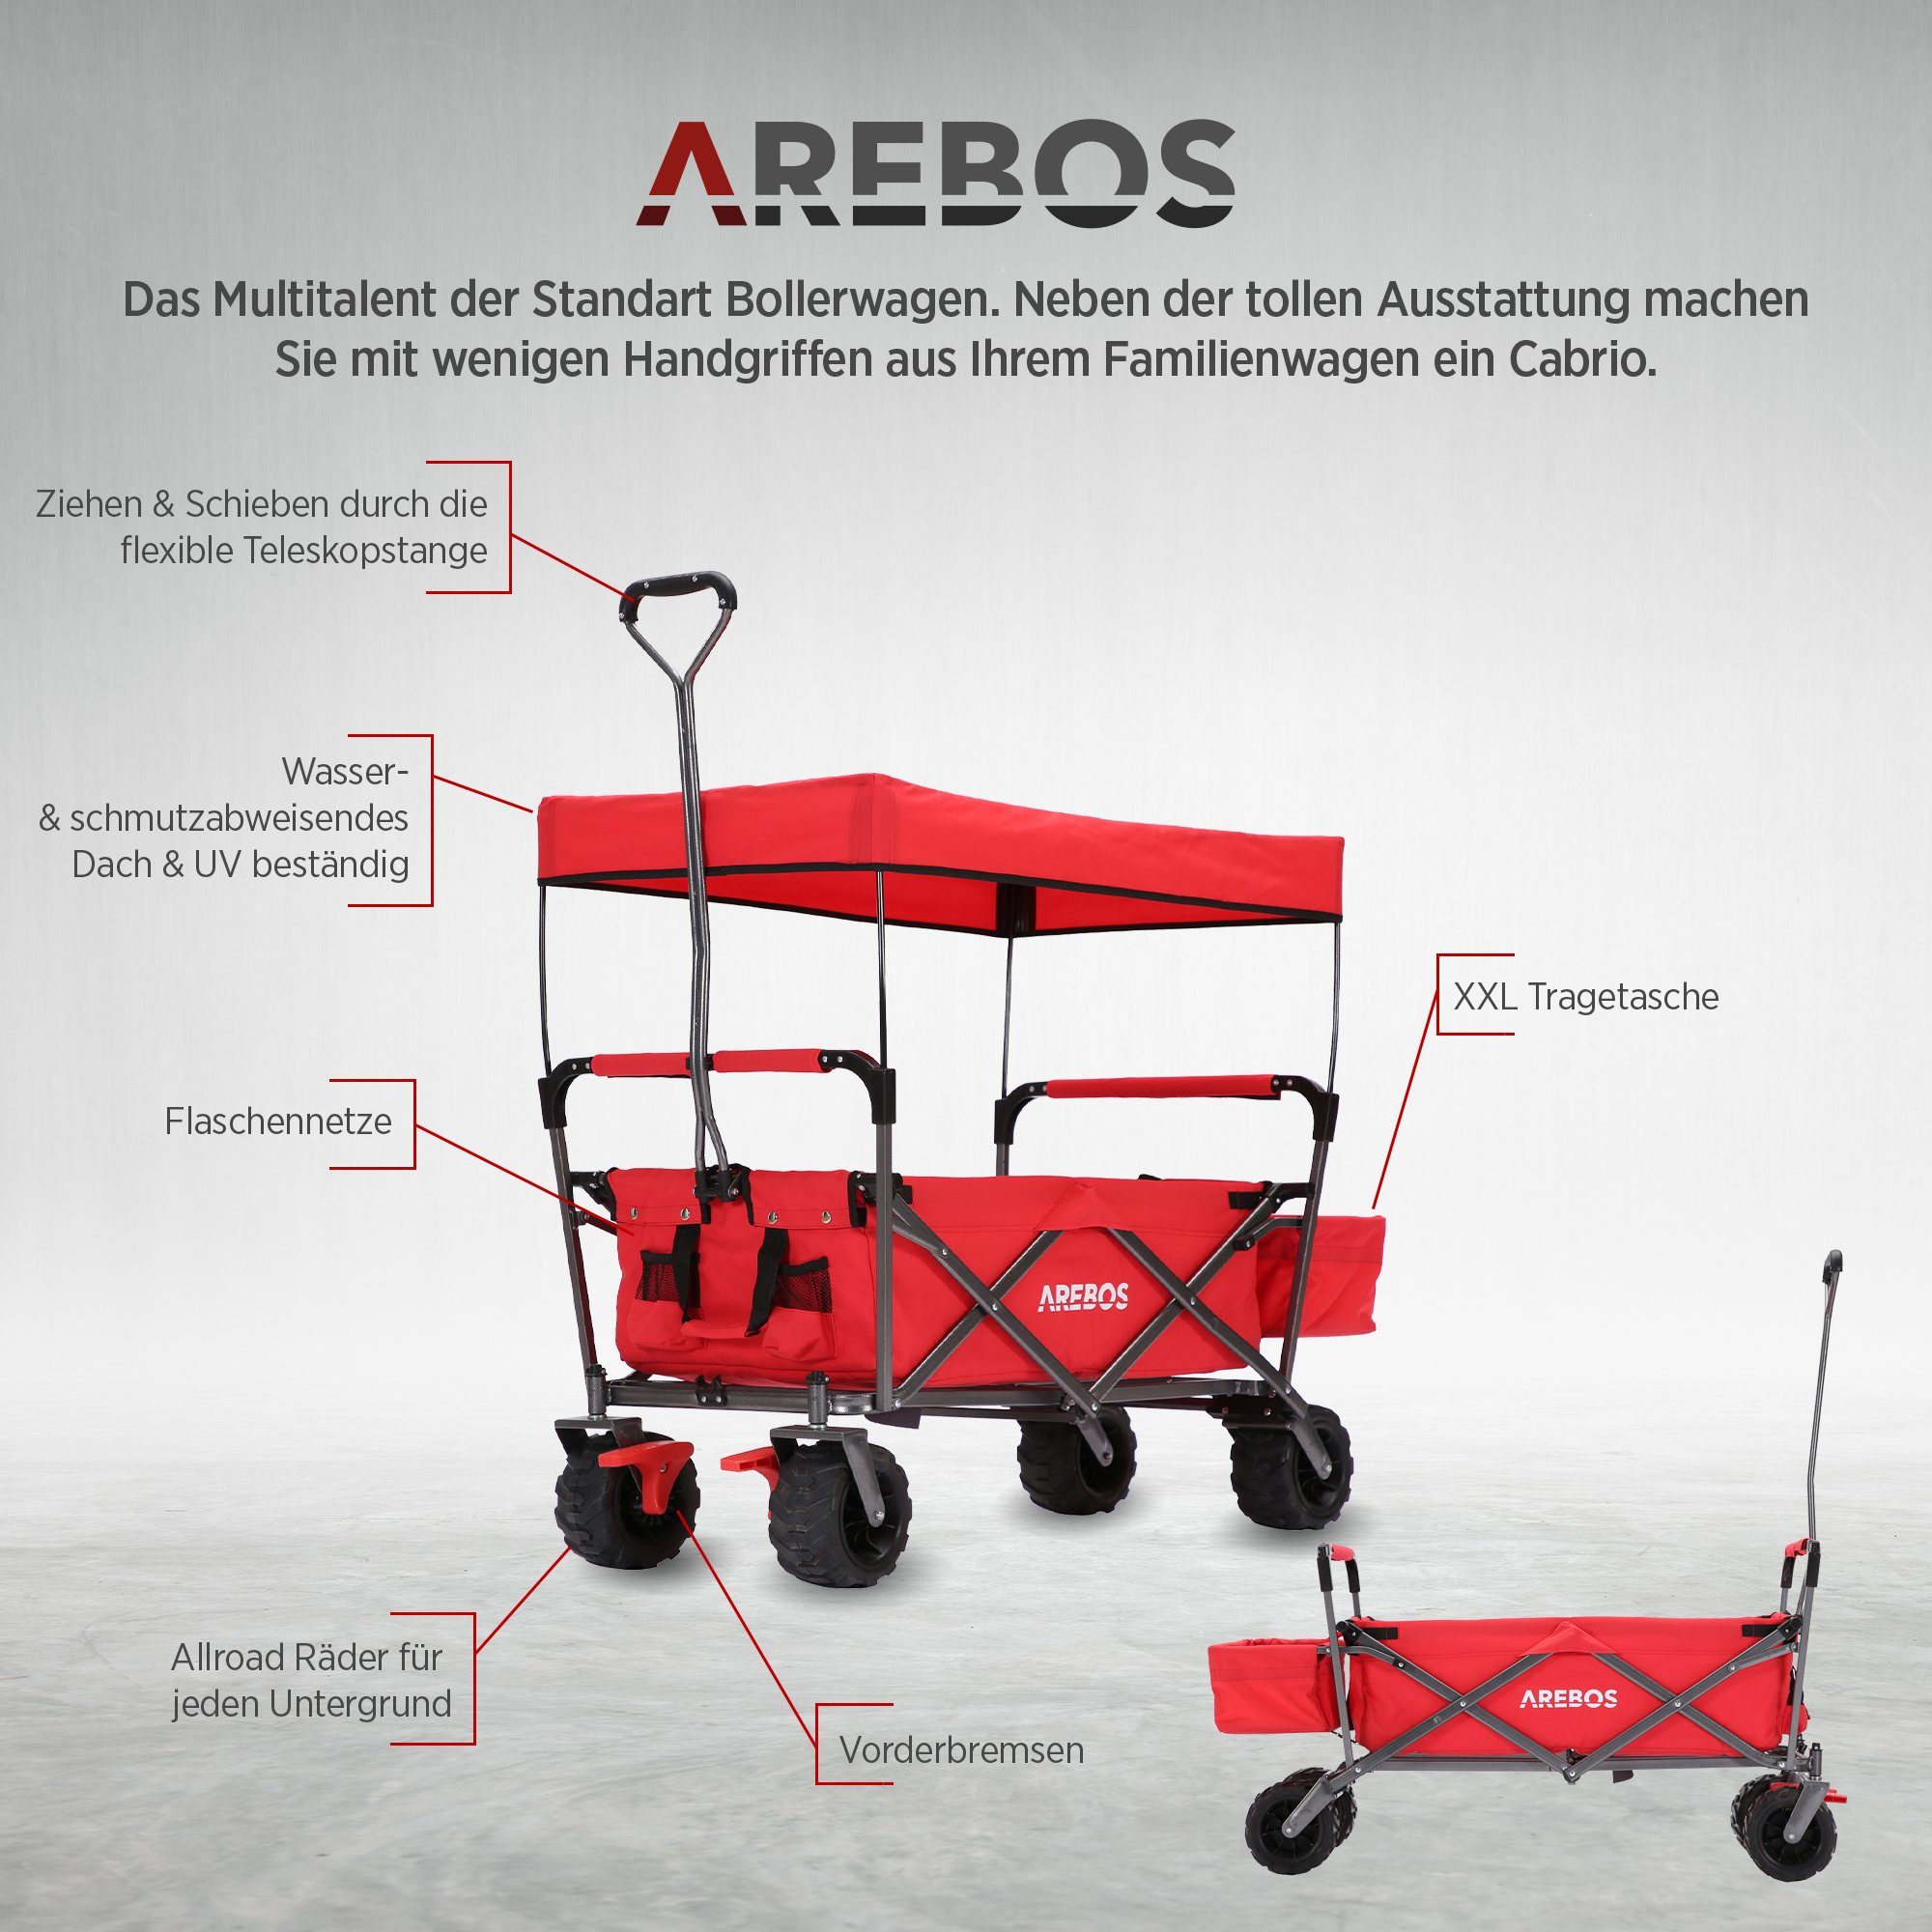 Arebos Bollerwagen Standard mit Dach, 124 128 rot x x Transportkarre, Gerätewagen, 60 Maße cm Handwagen